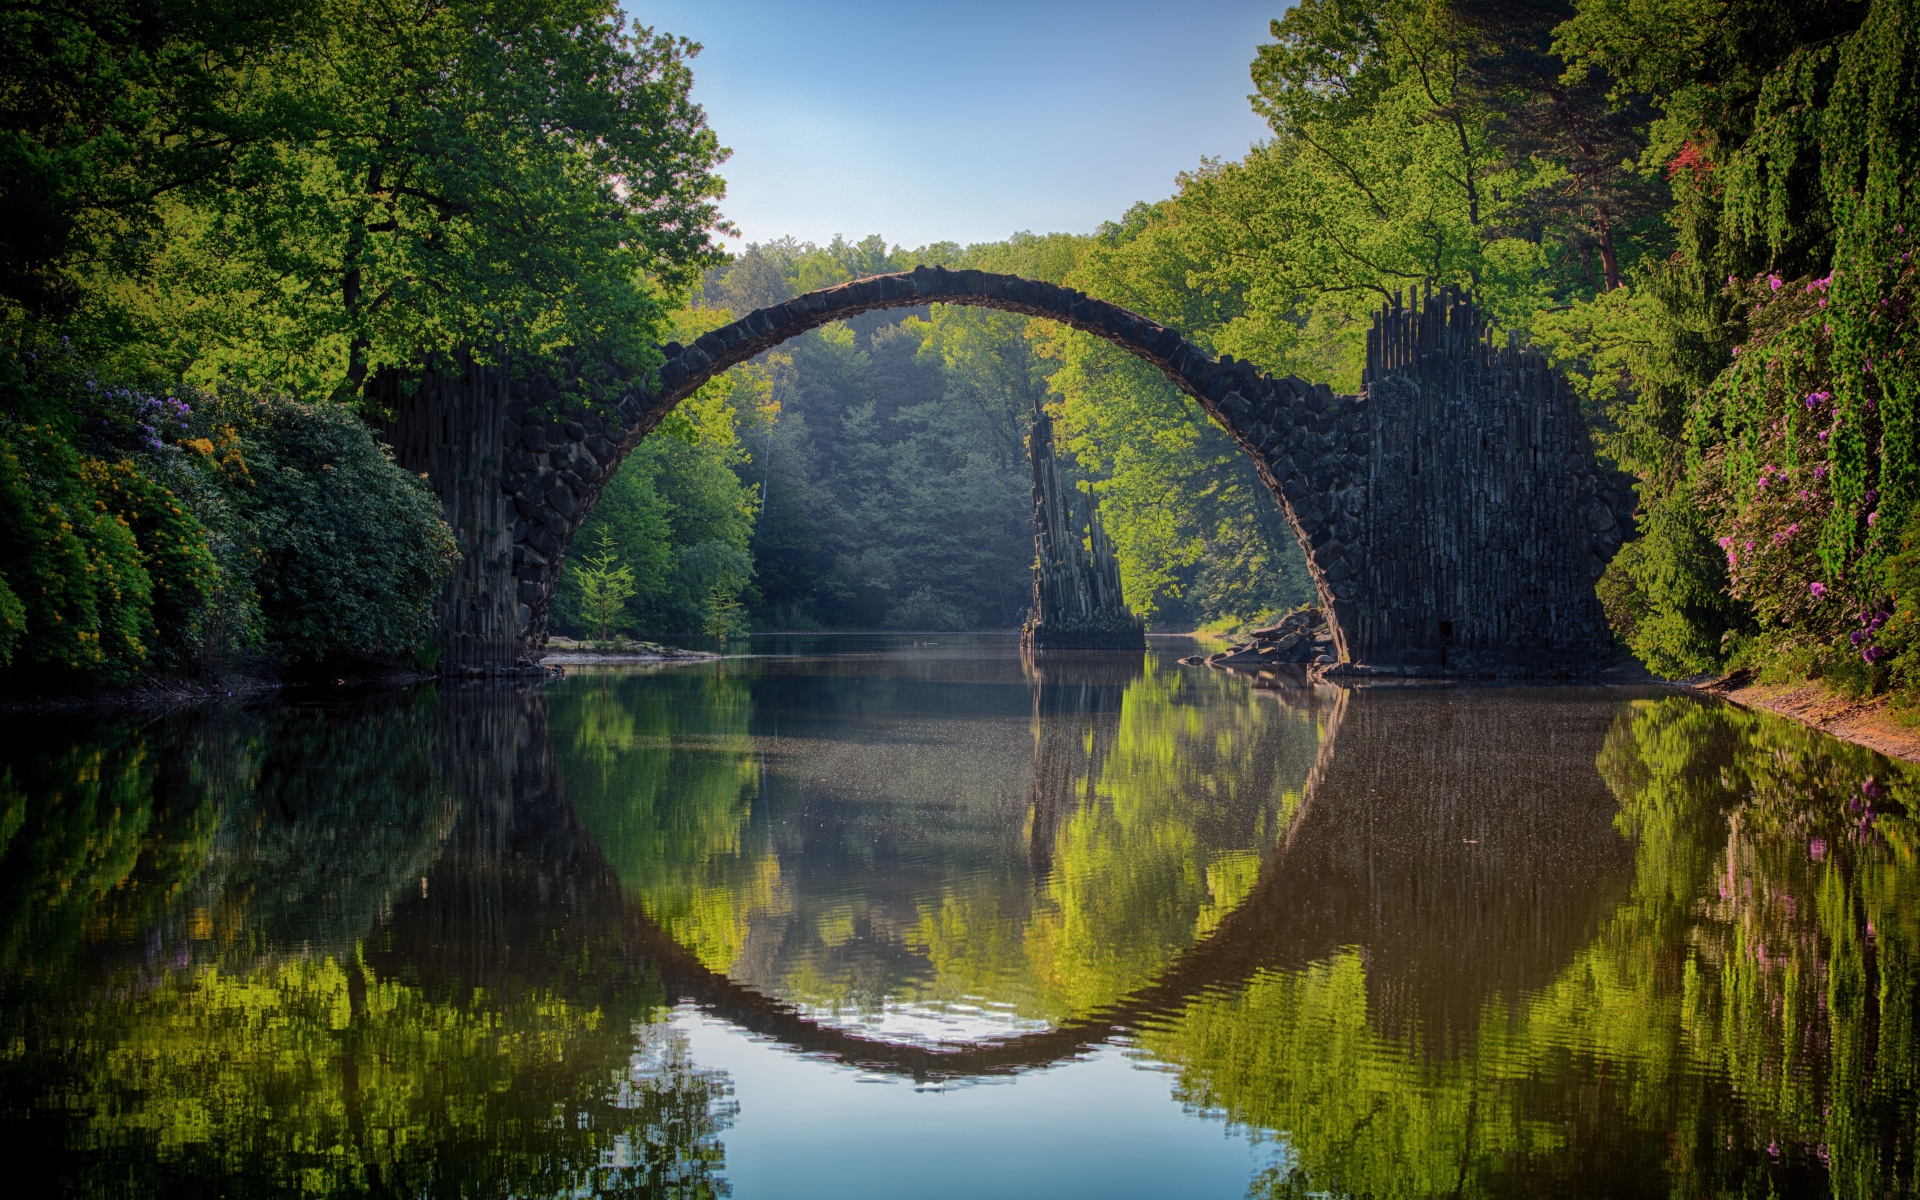 Чертов мост Ракотцбрюке через реку, Германия